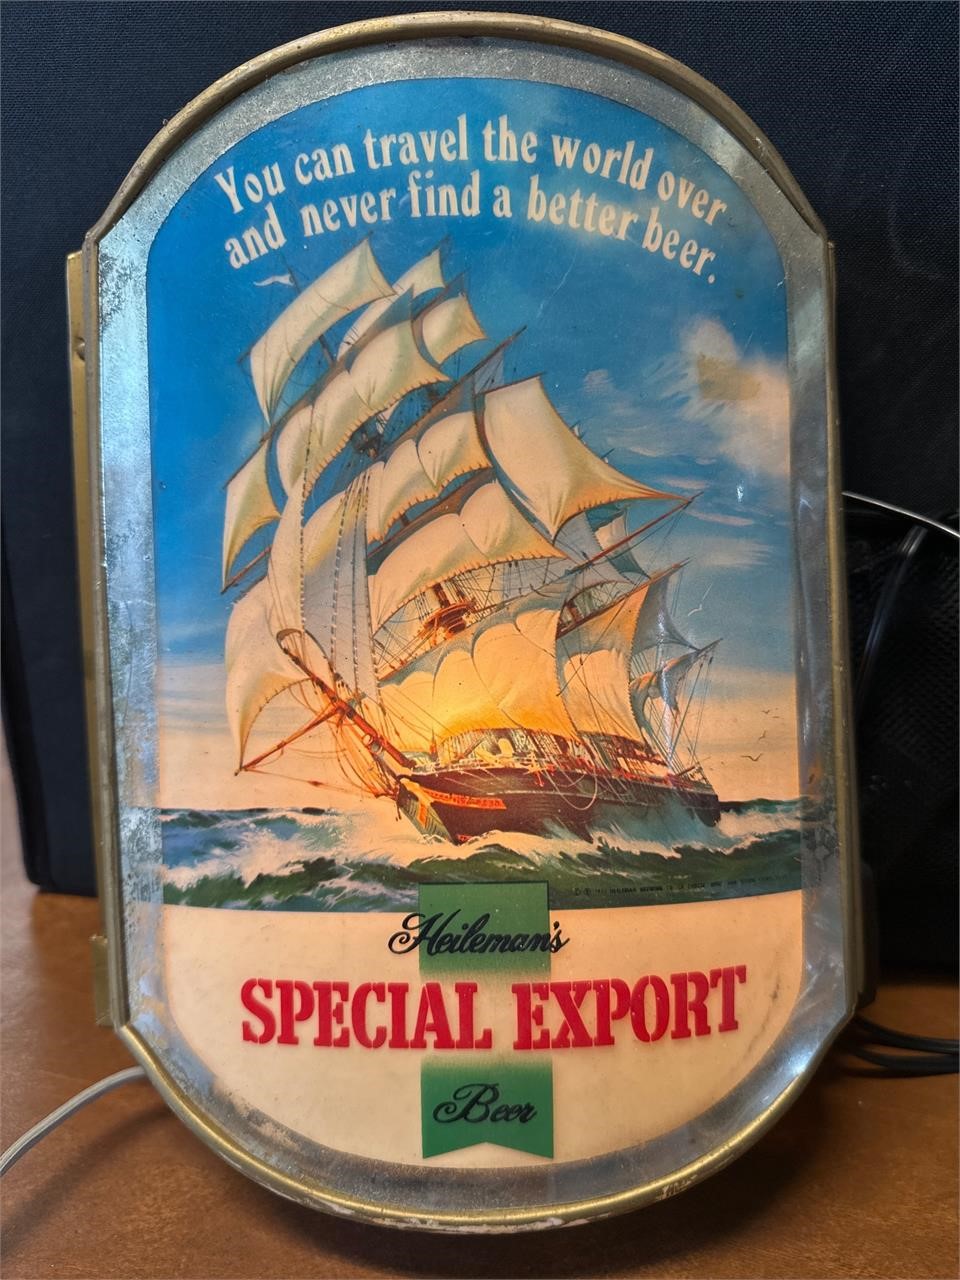 Heileman's special export beer light